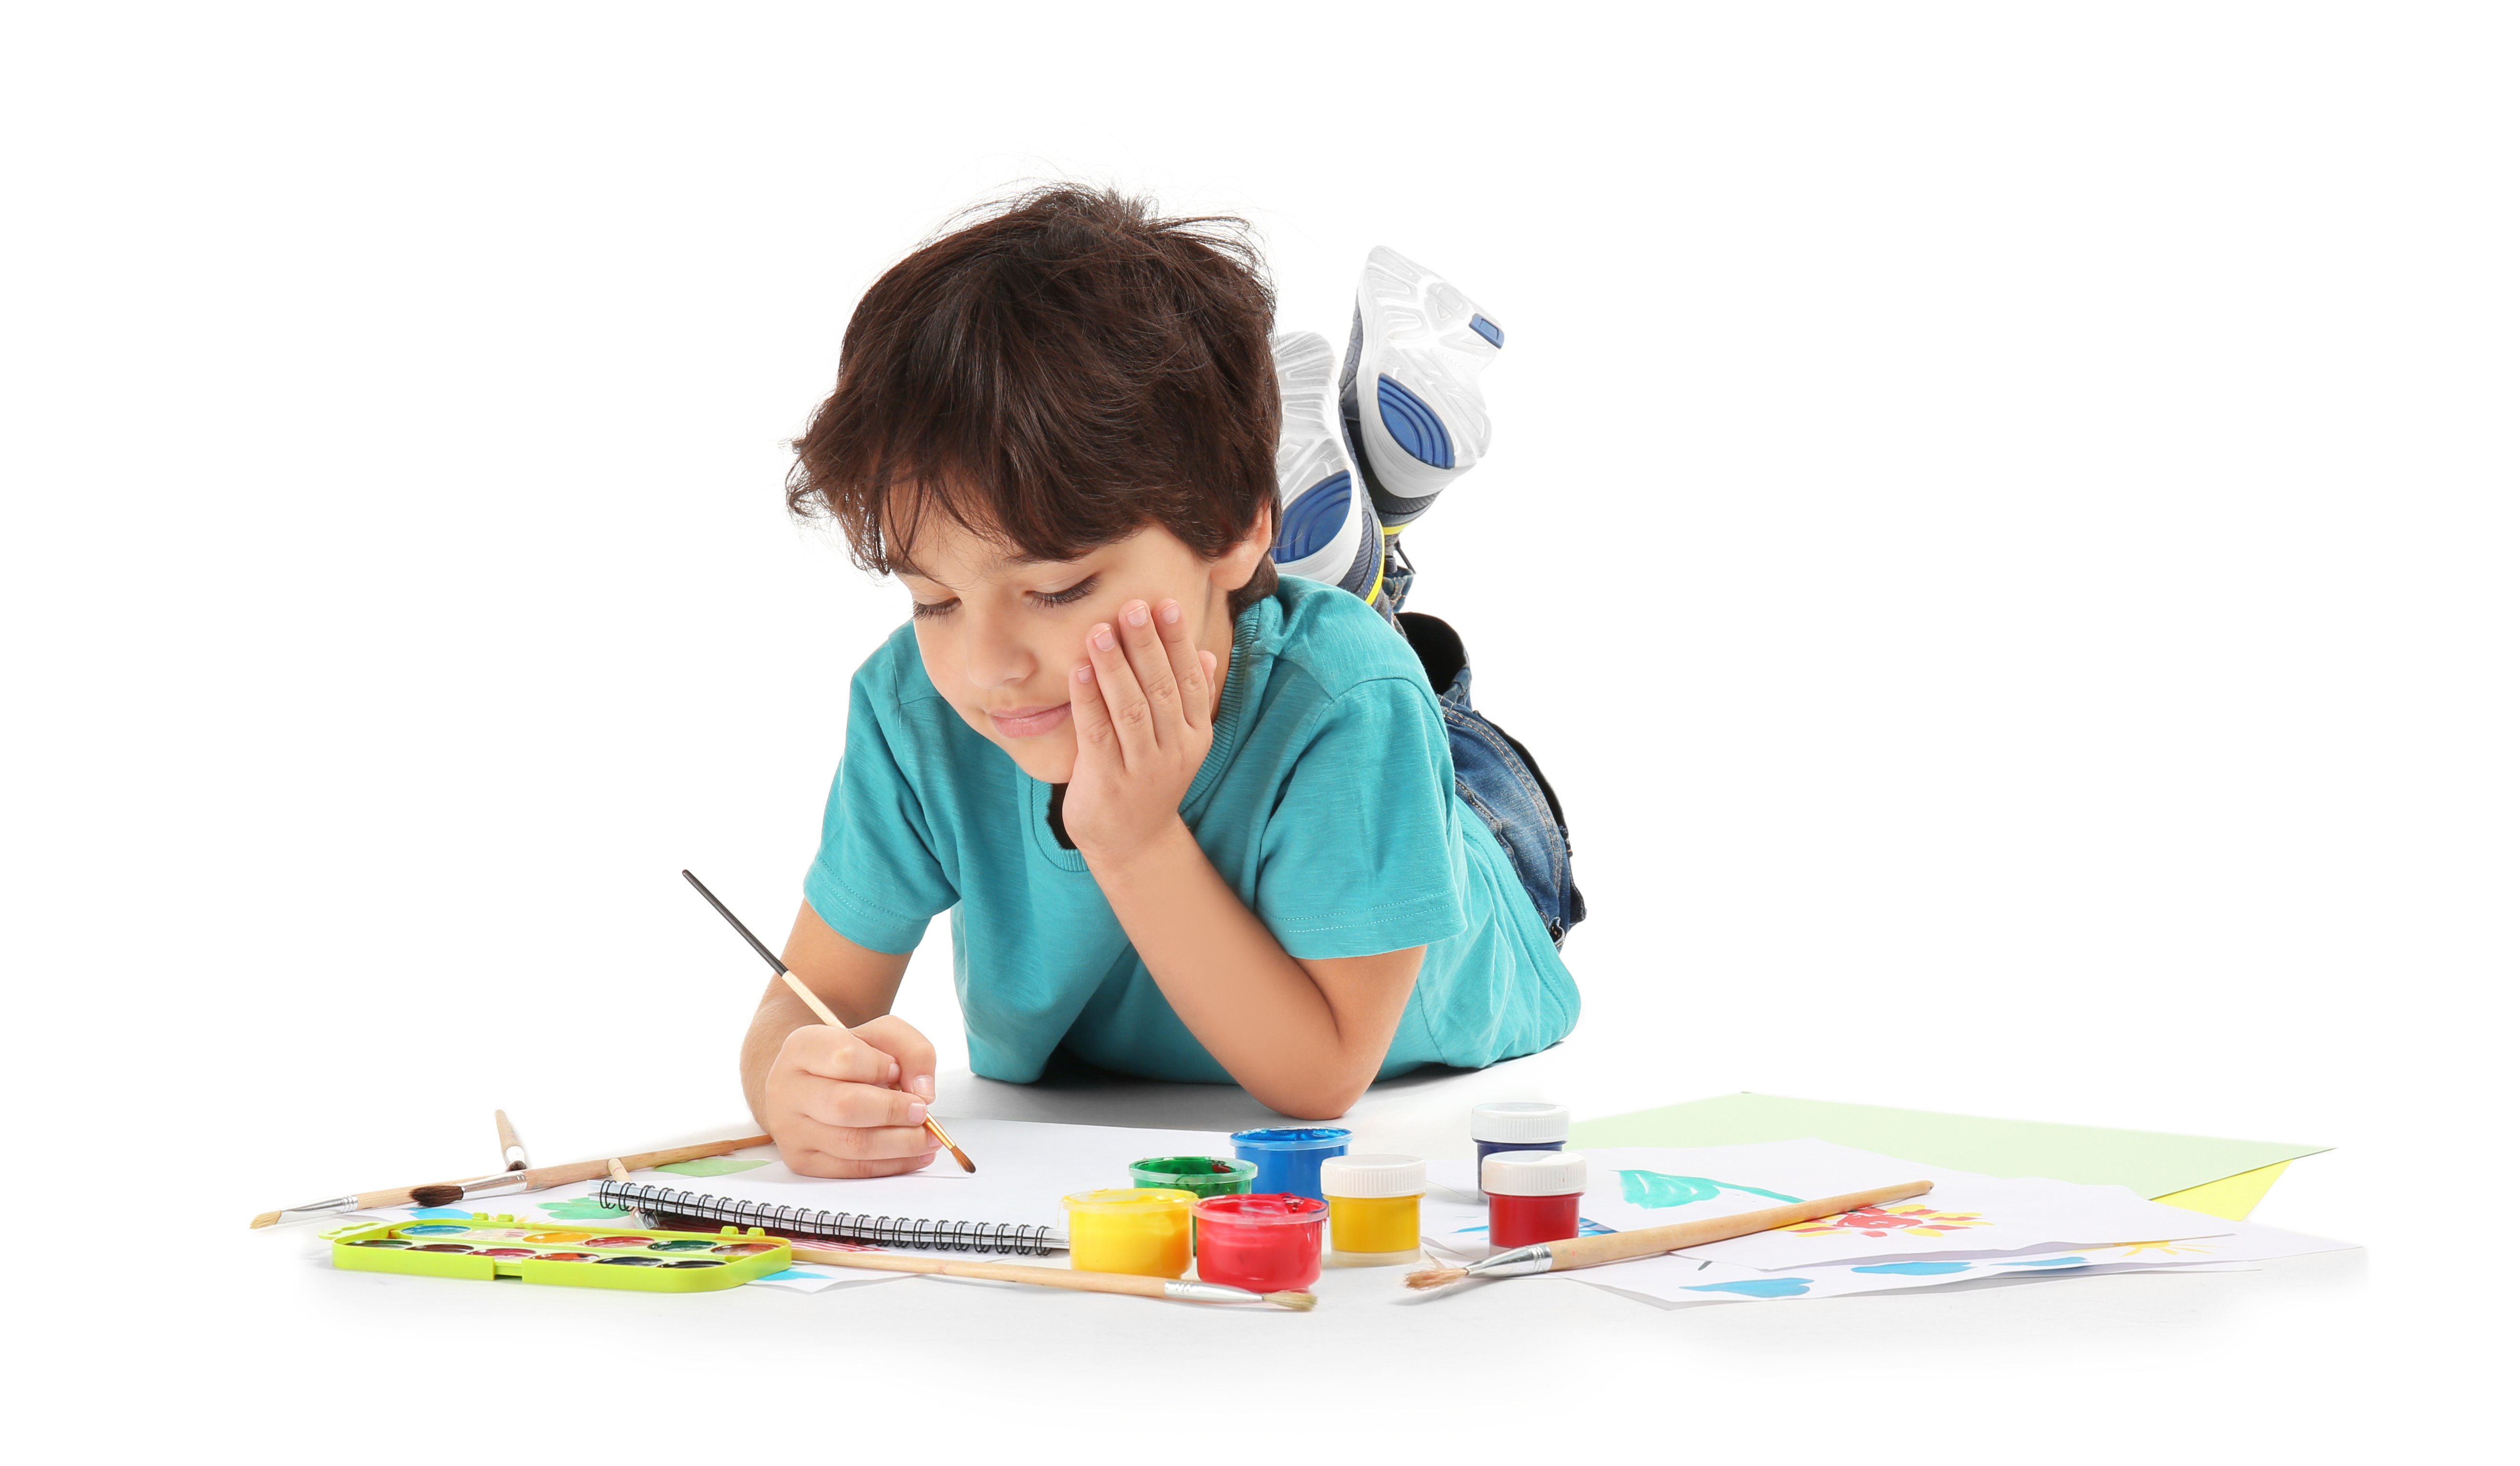 Un niño se toma su tiempo para hacer sus creaciones y en ocasiones las repite una y otra vez. (Foto Prensa Libre: Shutterstock)